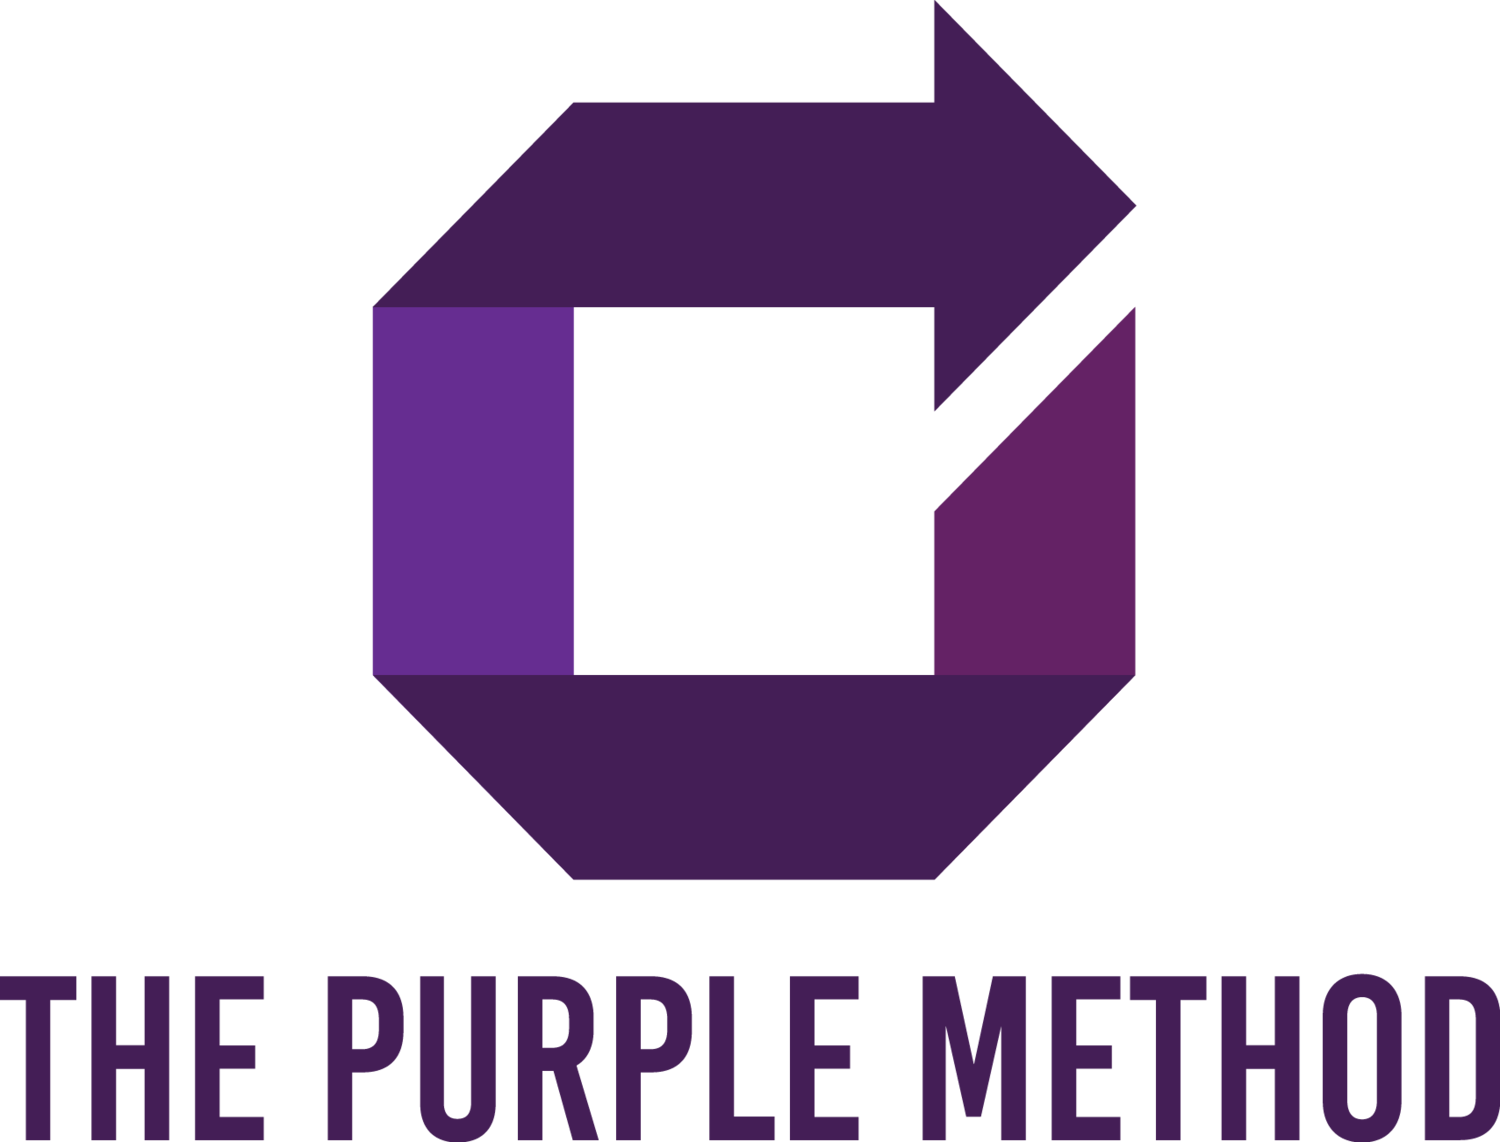 The Purple Method